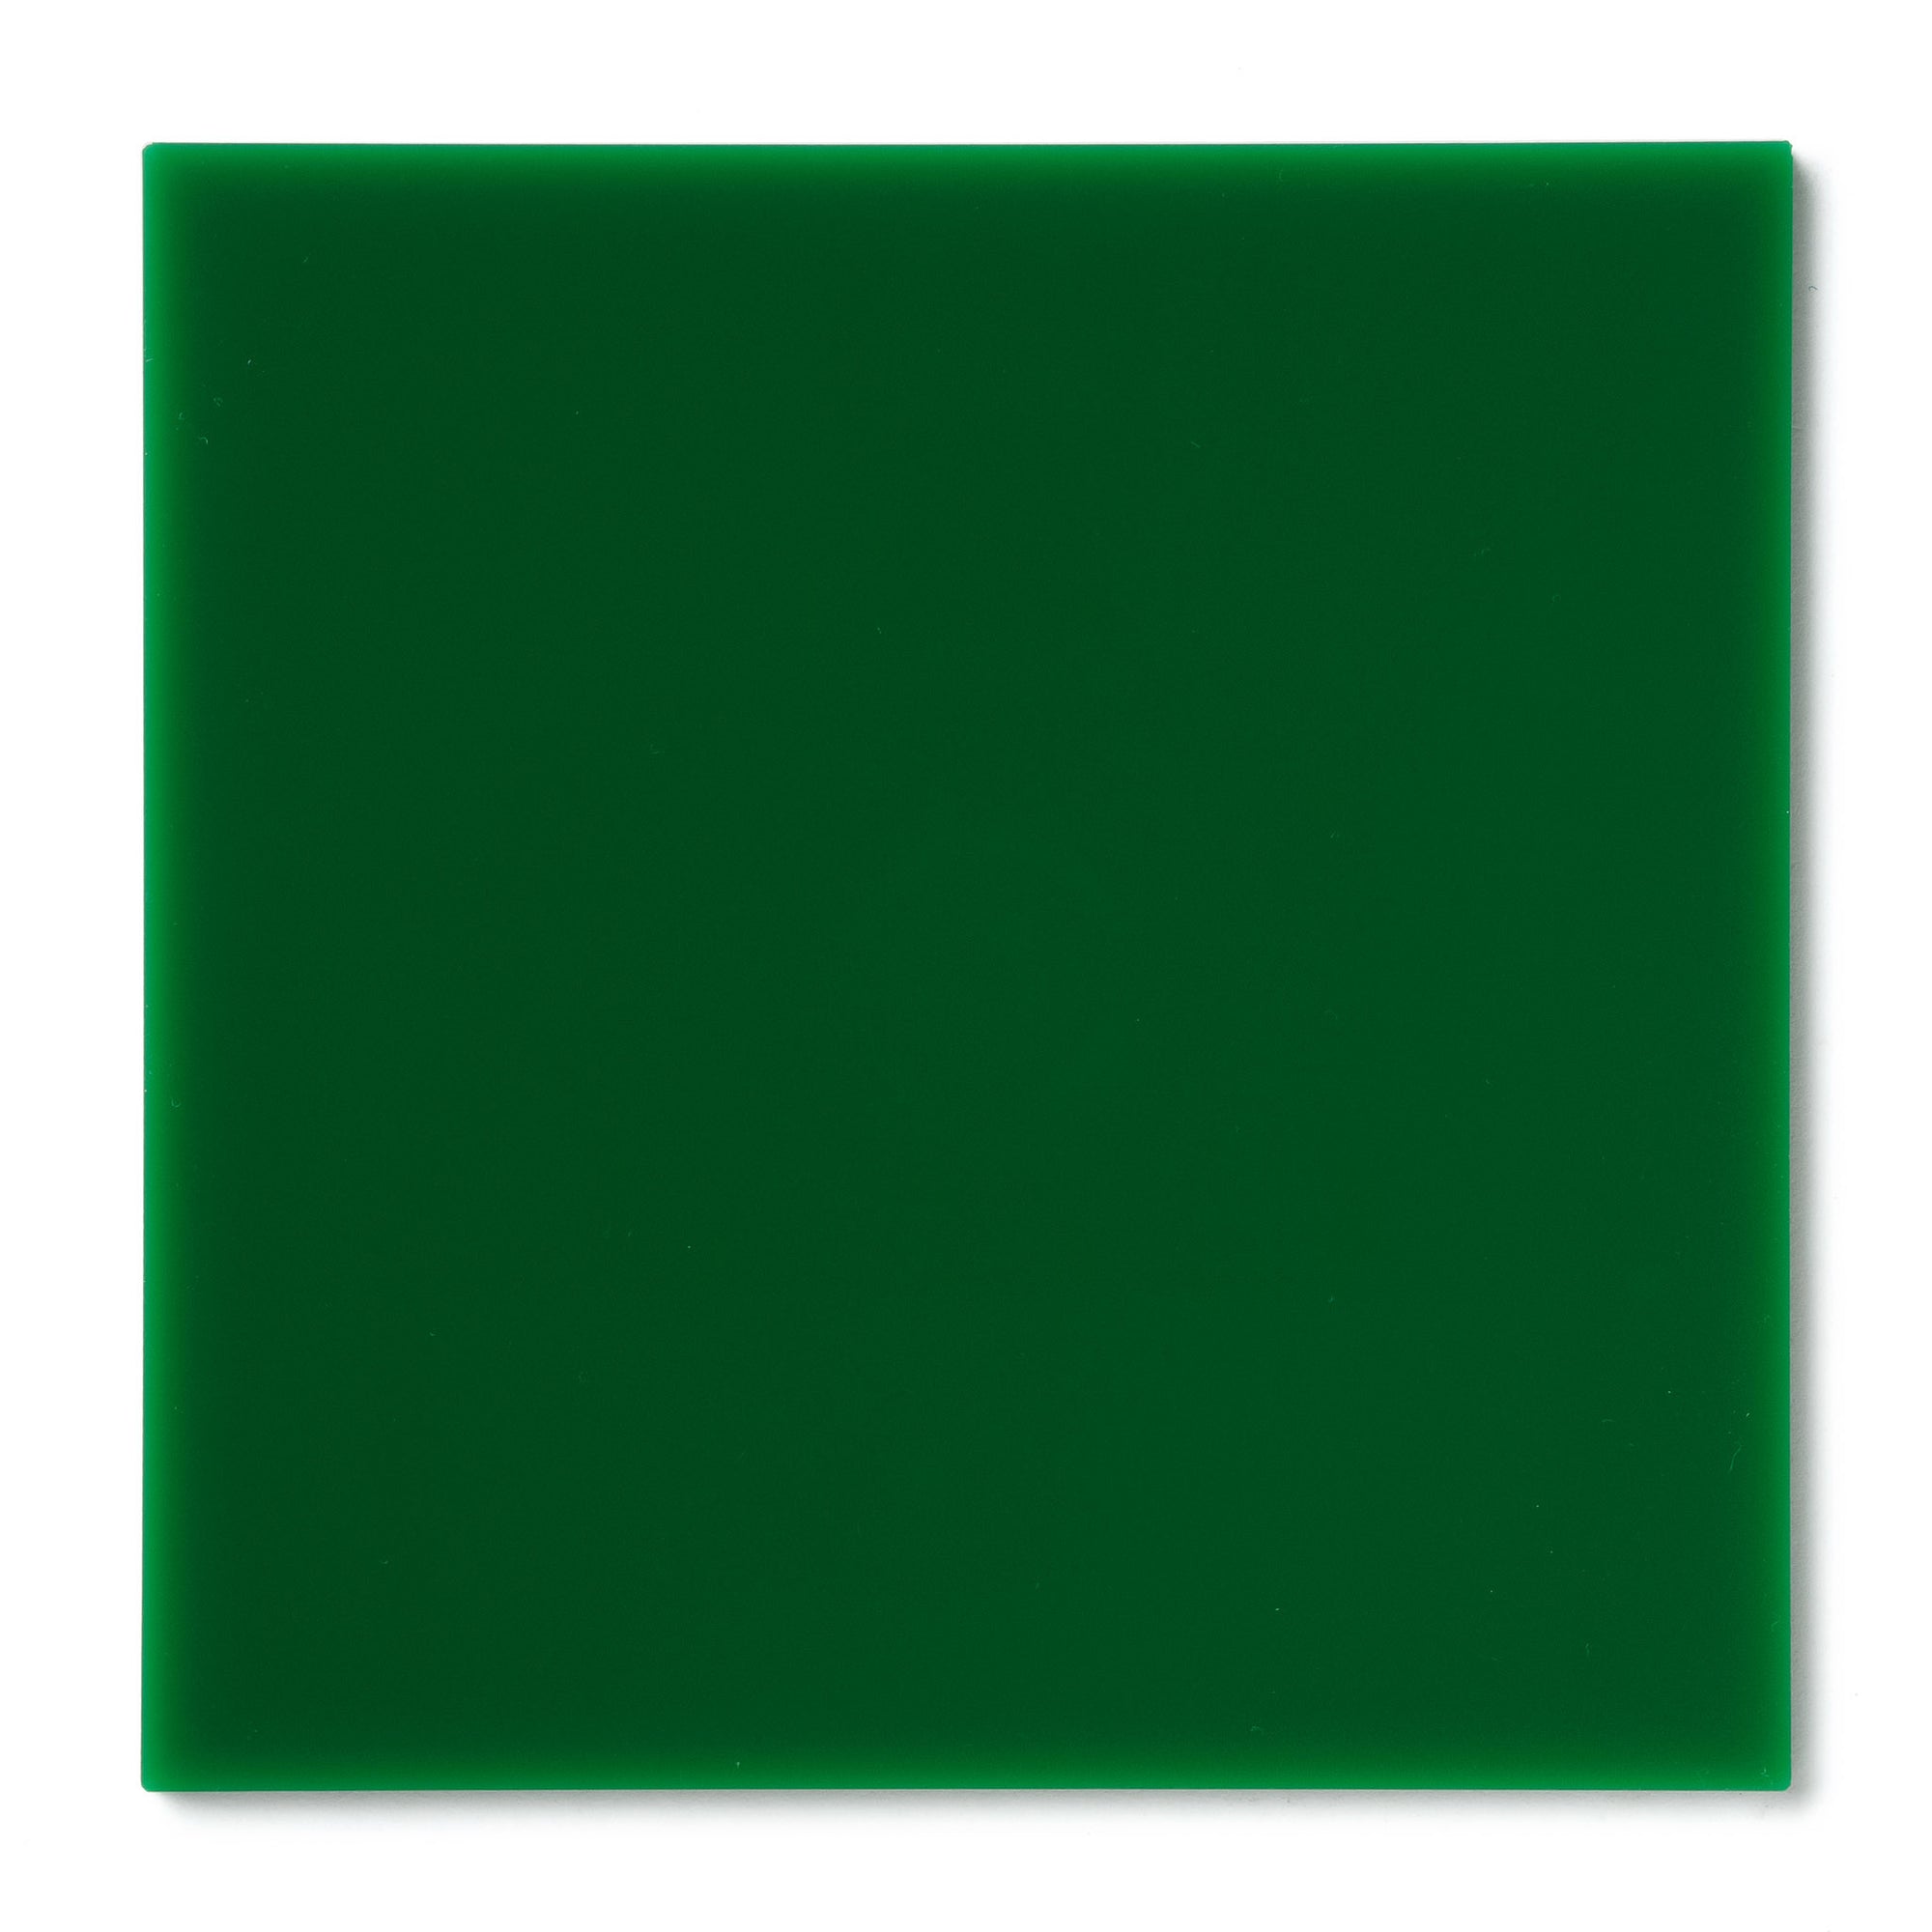 Green Opaque Acrylic Plexiglass Sheet, color 2108